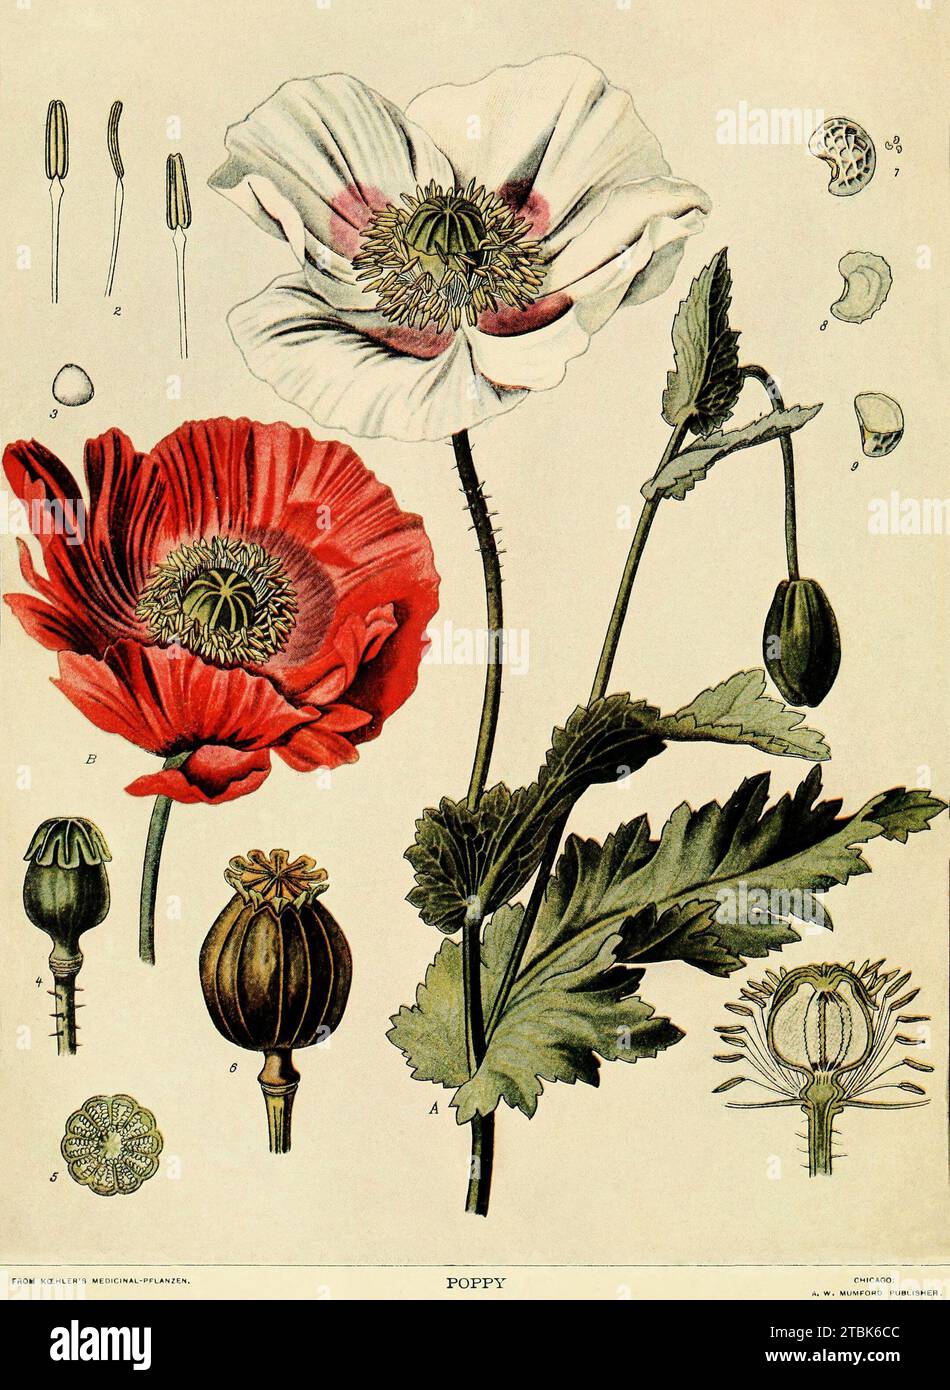 Illustration naturaliste de la plante de pavot dont l'opium est dérivé. De Koehler's Medicinal Planzen (plantes médicales). Une planche de l'édition publiée par A.W. Mumford à Chicago. Banque D'Images